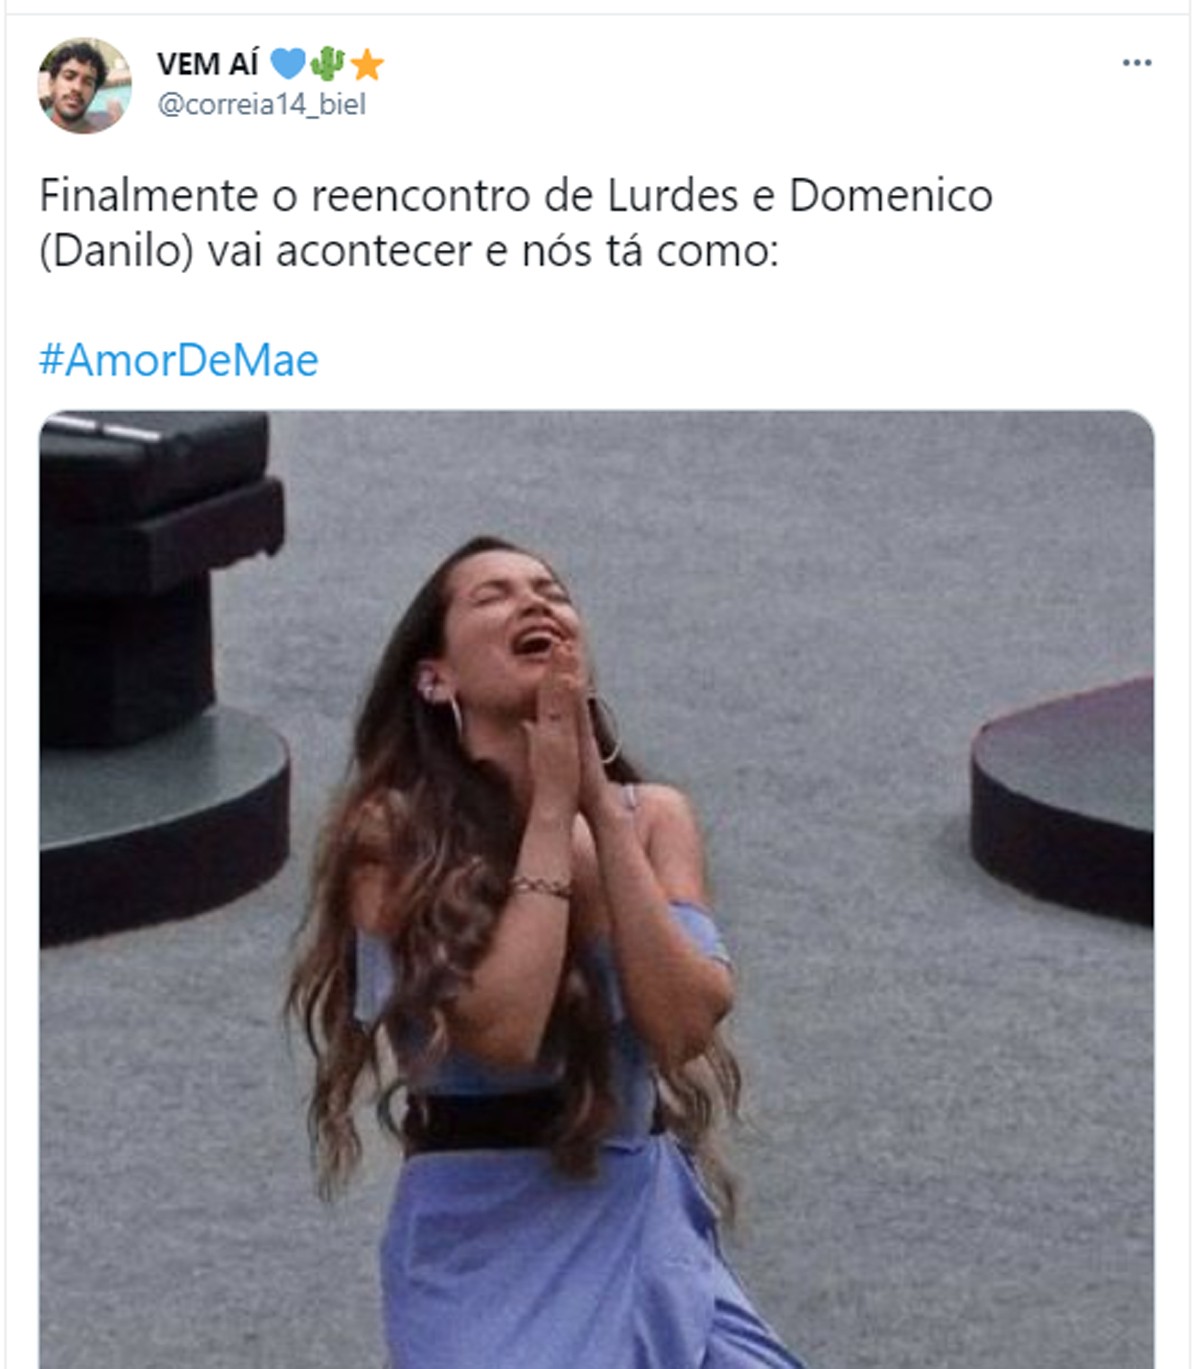 Reencontro de Lurdes e Domênico em Amor de Mãe rende memes na web (Foto: Reprodução/Twitter)